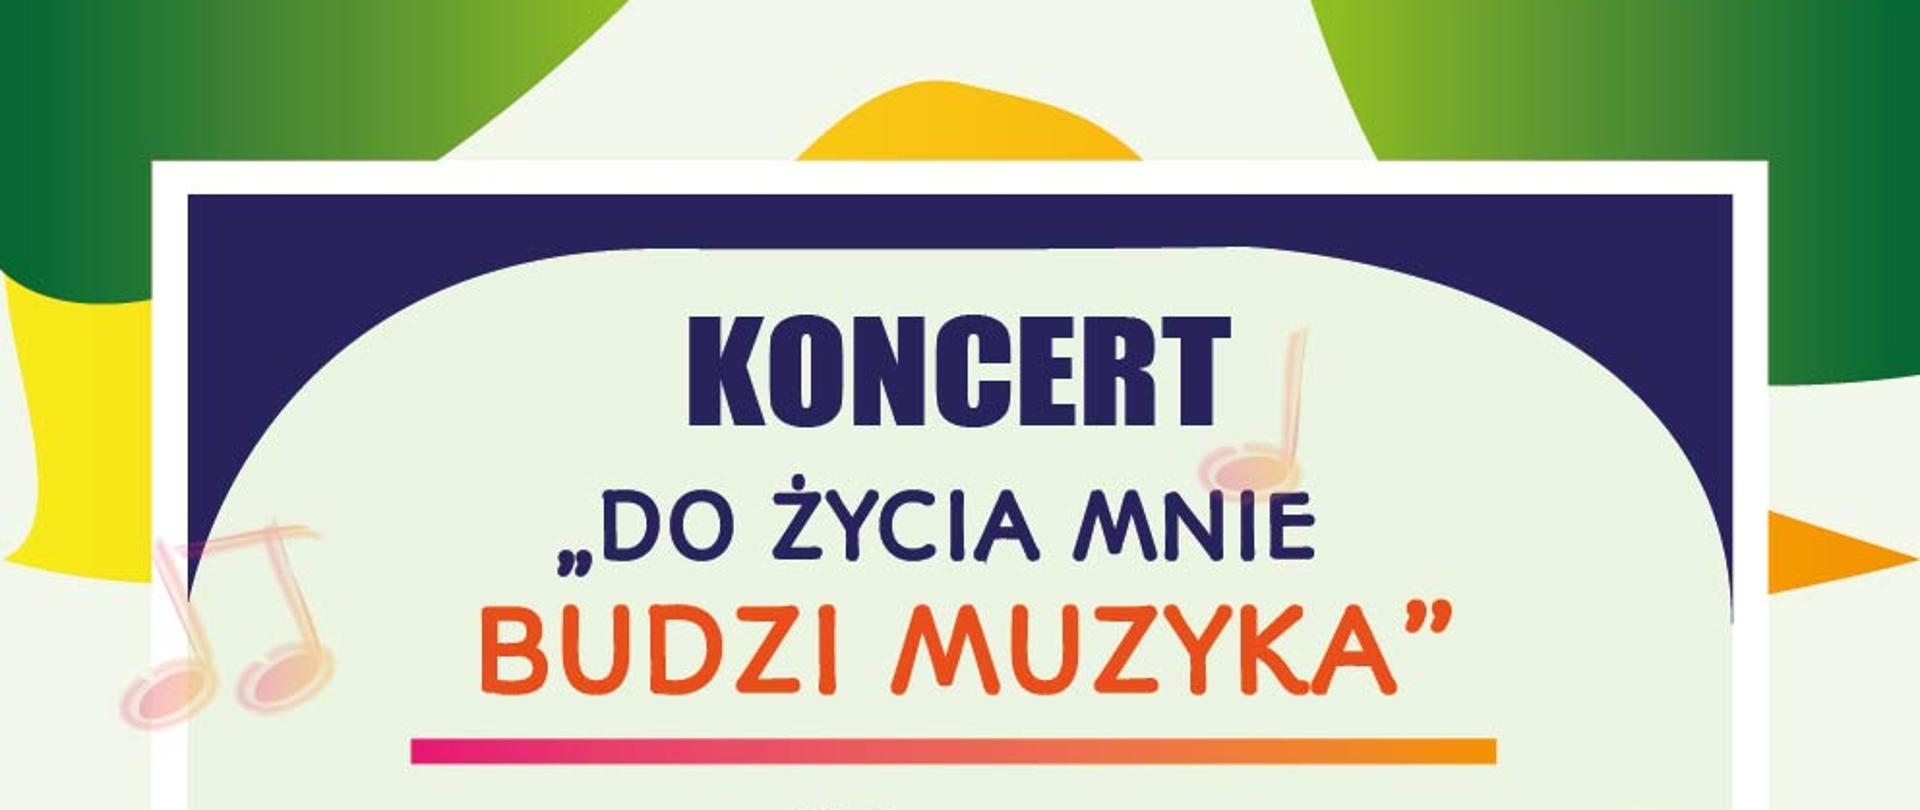 Plakat przedstawia informacje na temat koncertu chórów szkolnych "Do życia mnie budzi muzyka". Wystąpią chóry klasy II i III. Koncert odbędzie się 13 czerwca o godzinie 17:30 